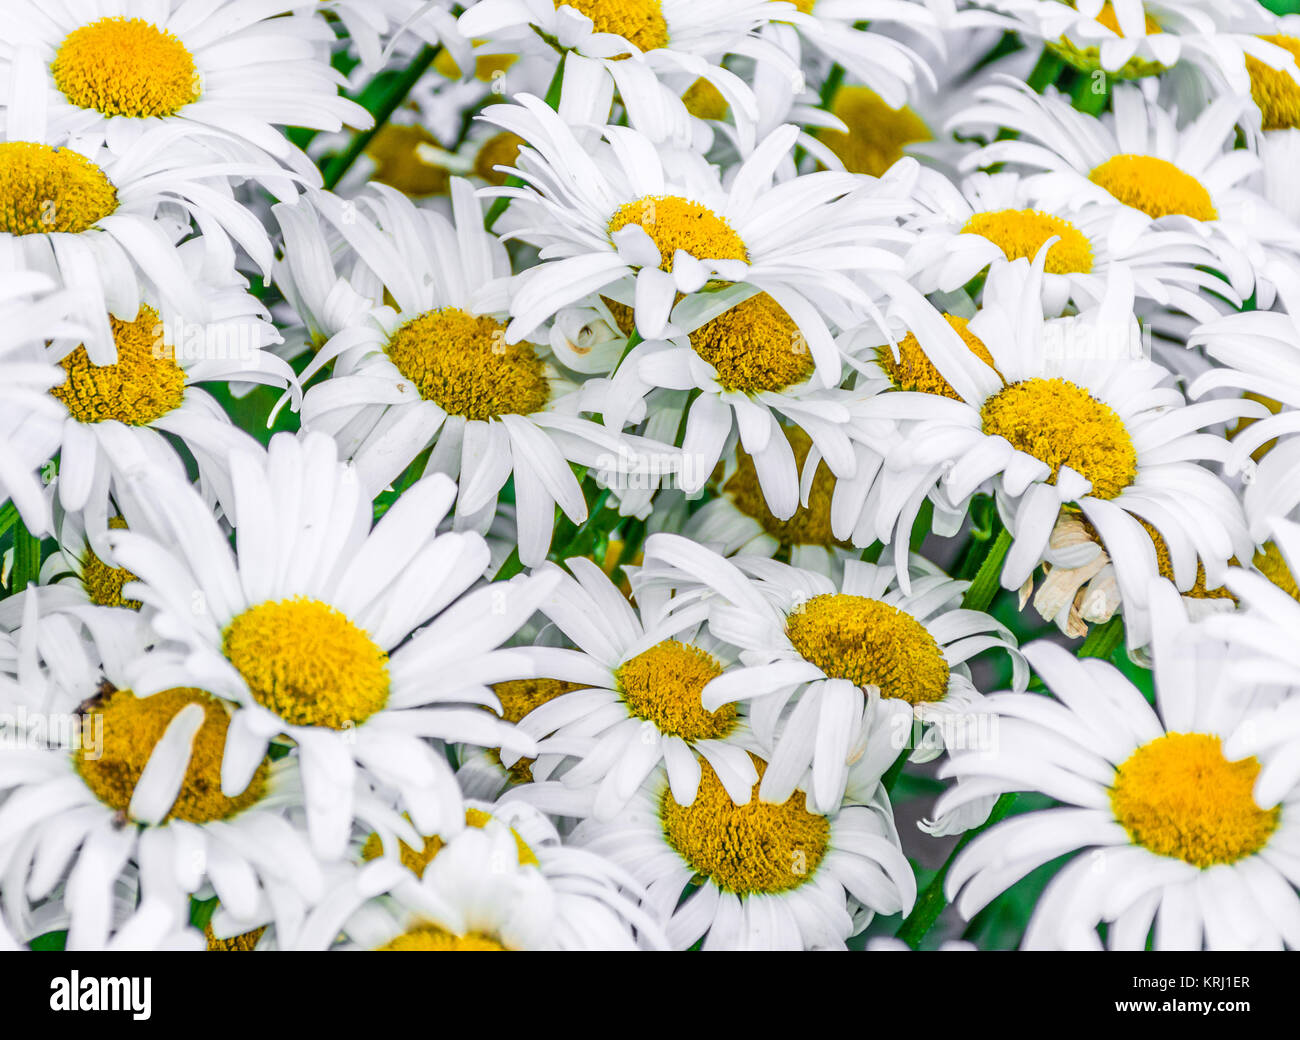 Daisies Flowerheads in a Bulk Closeup View Stock Photo